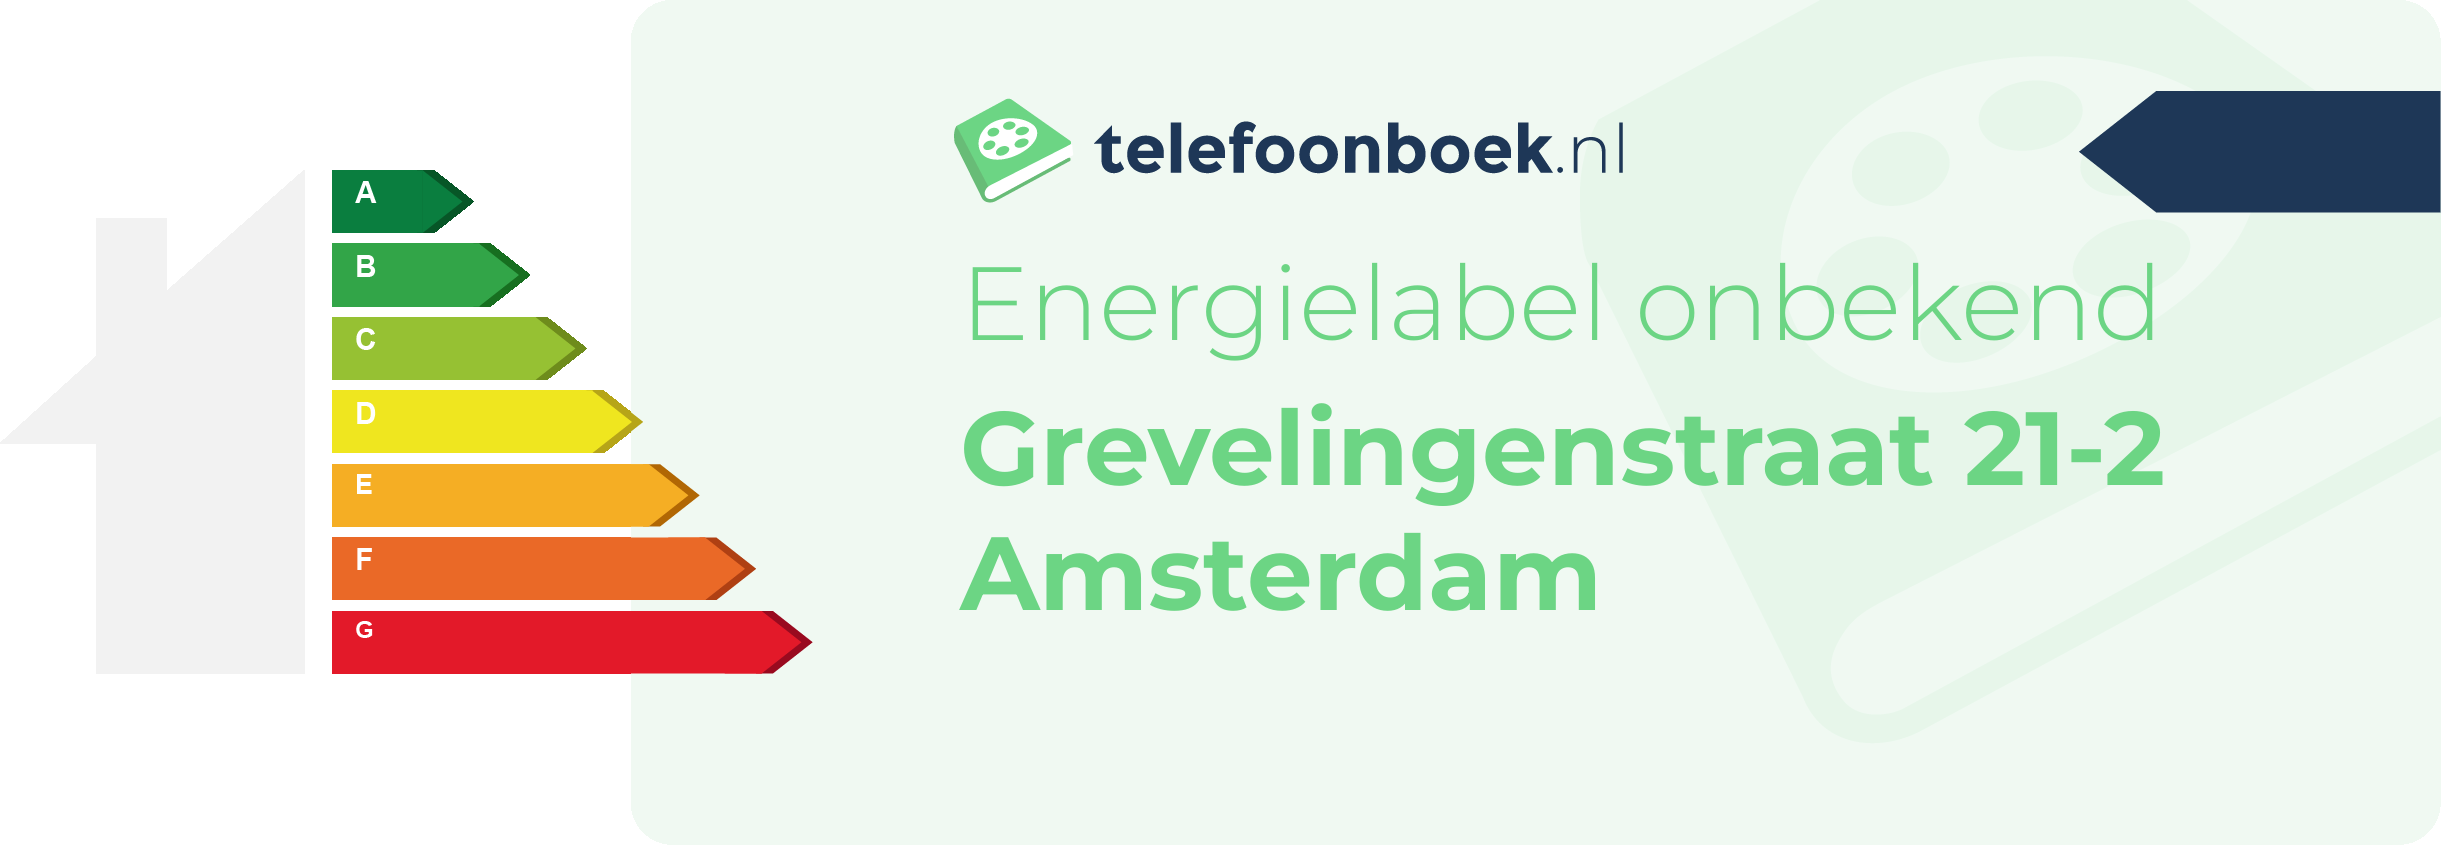 Energielabel Grevelingenstraat 21-2 Amsterdam